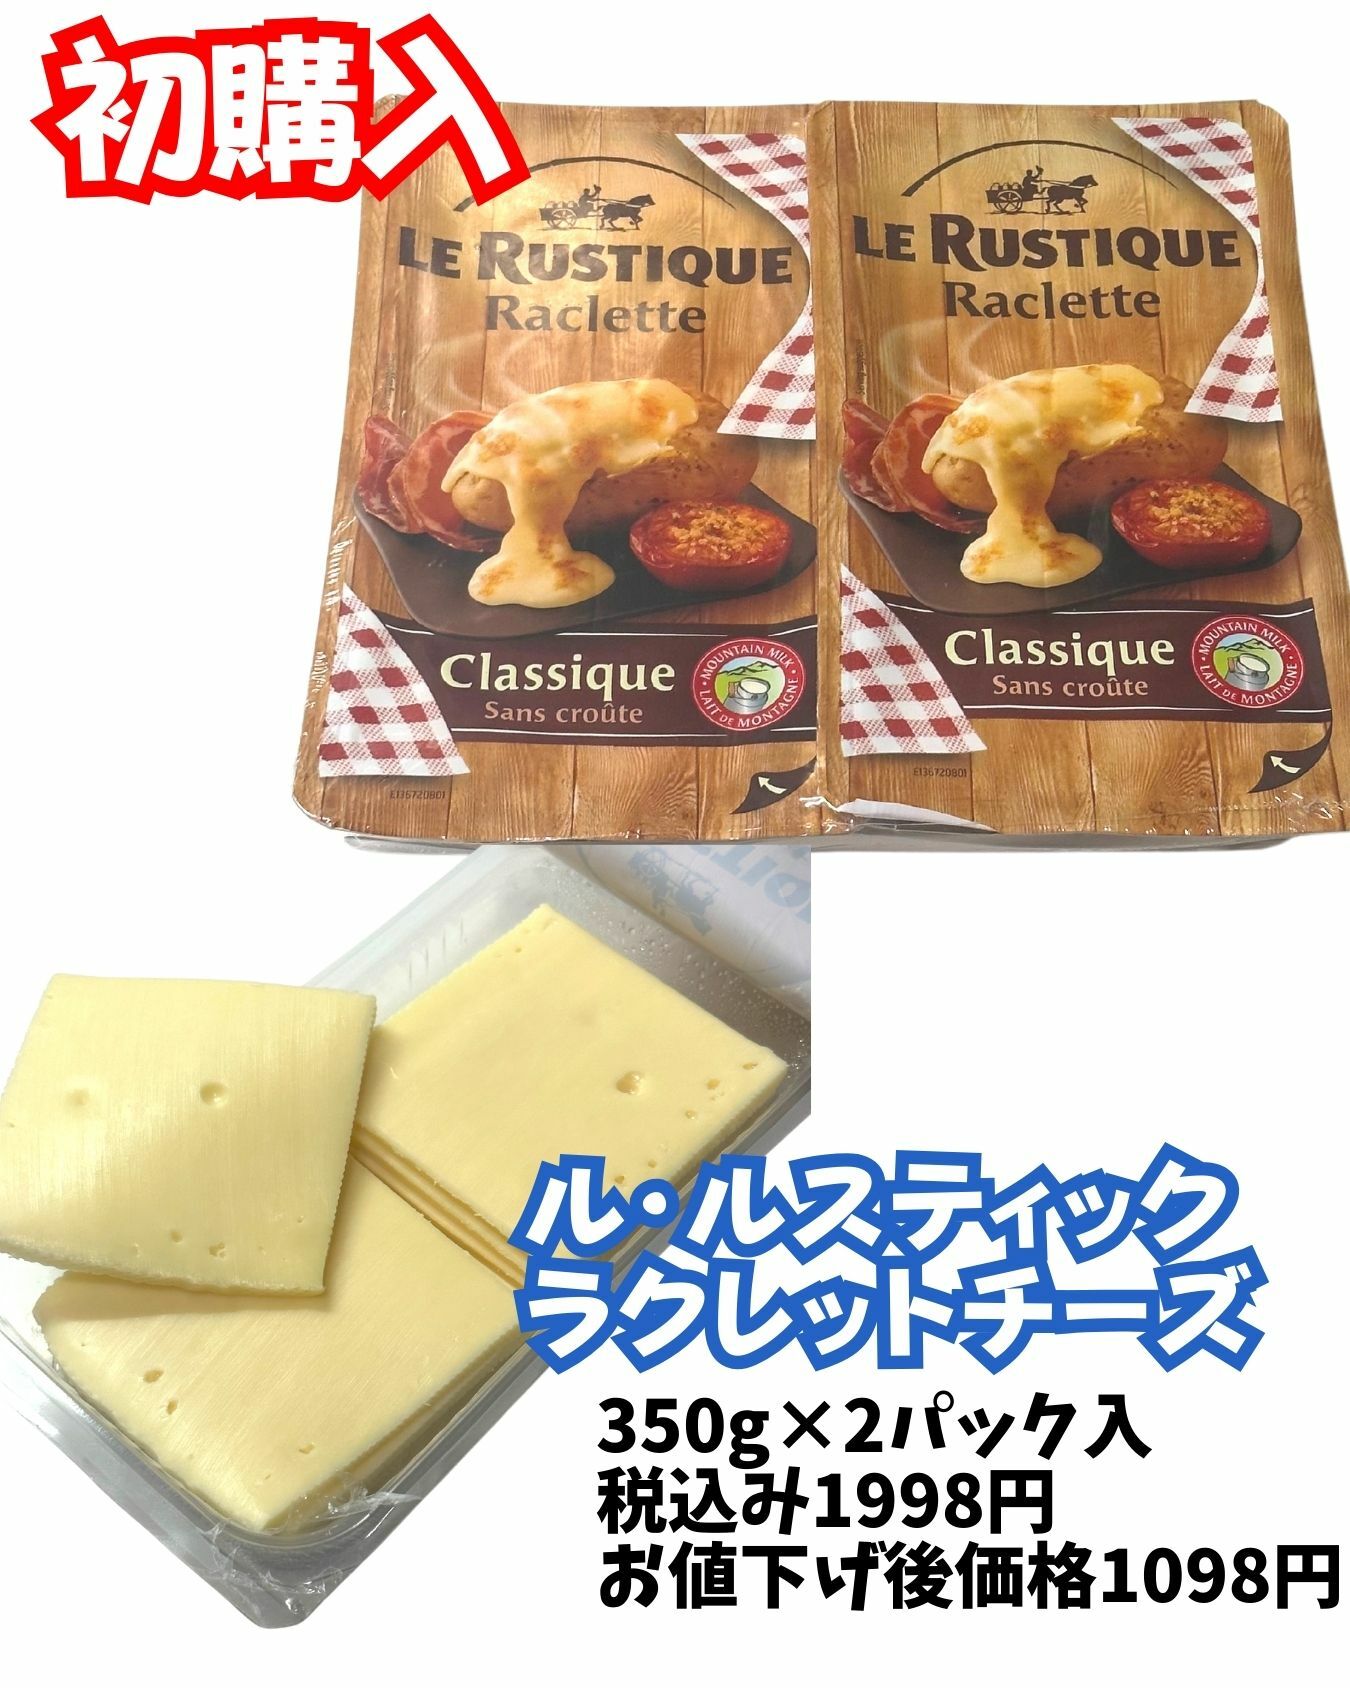 【コストコ】ラクレットチーズがとても美味しい